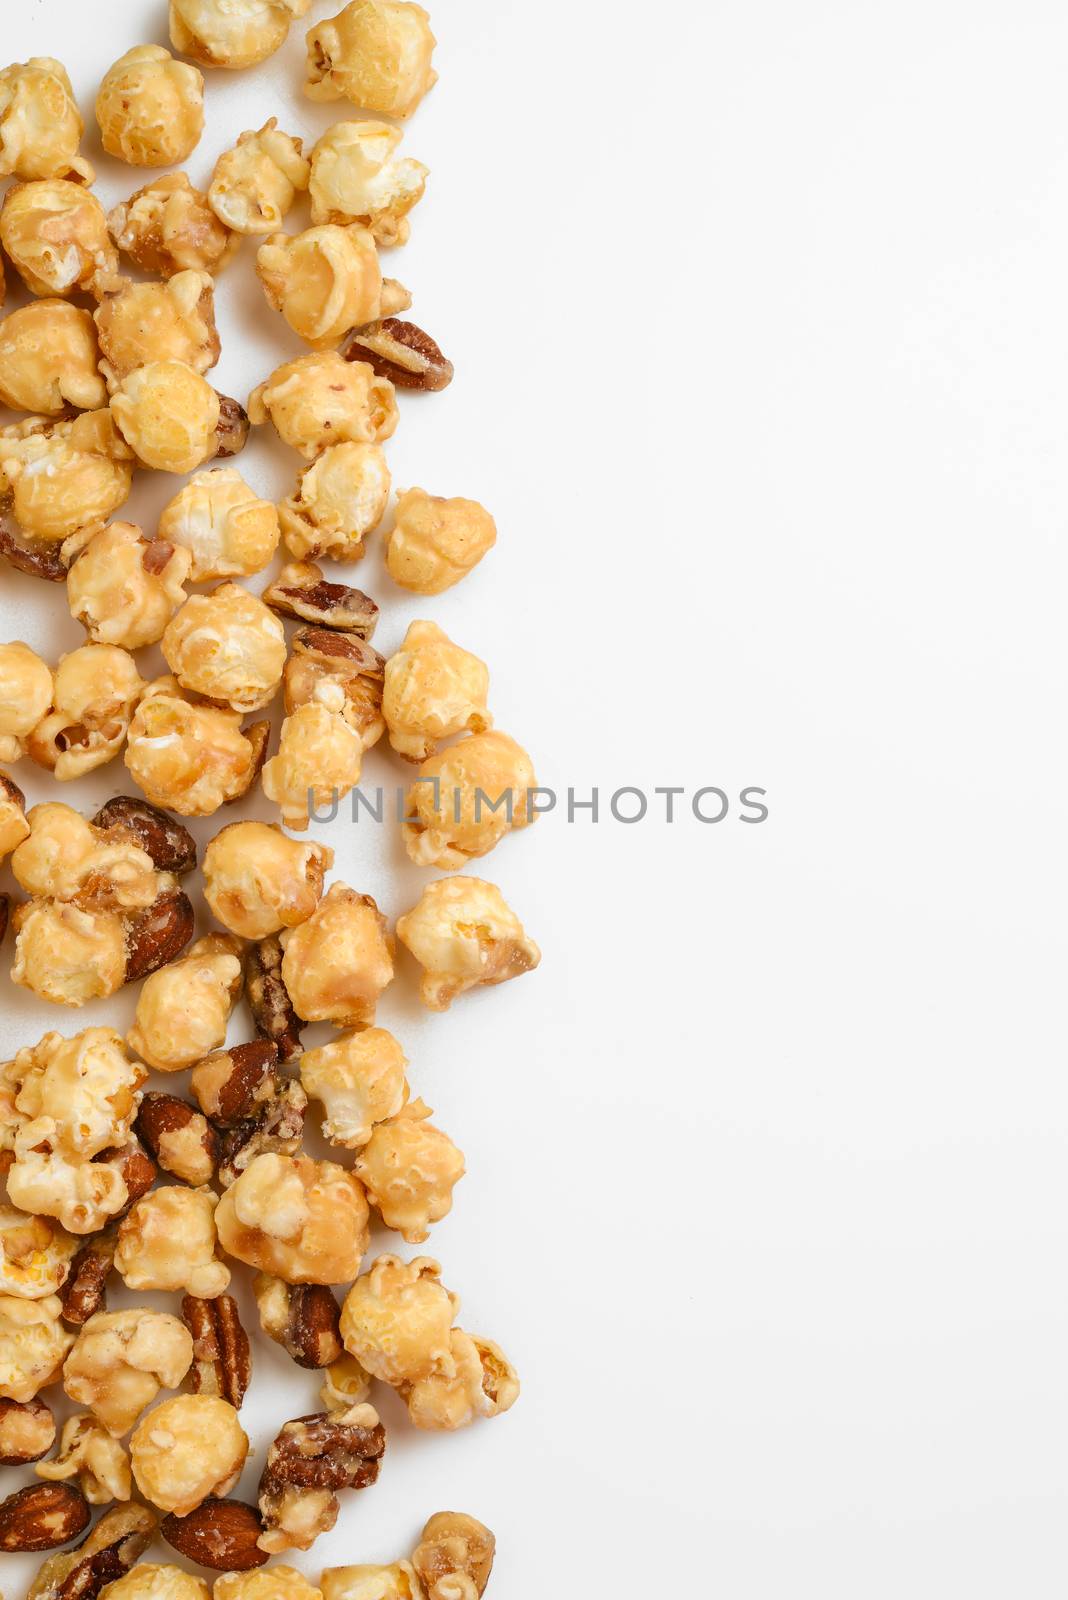 Popcorn by antpkr